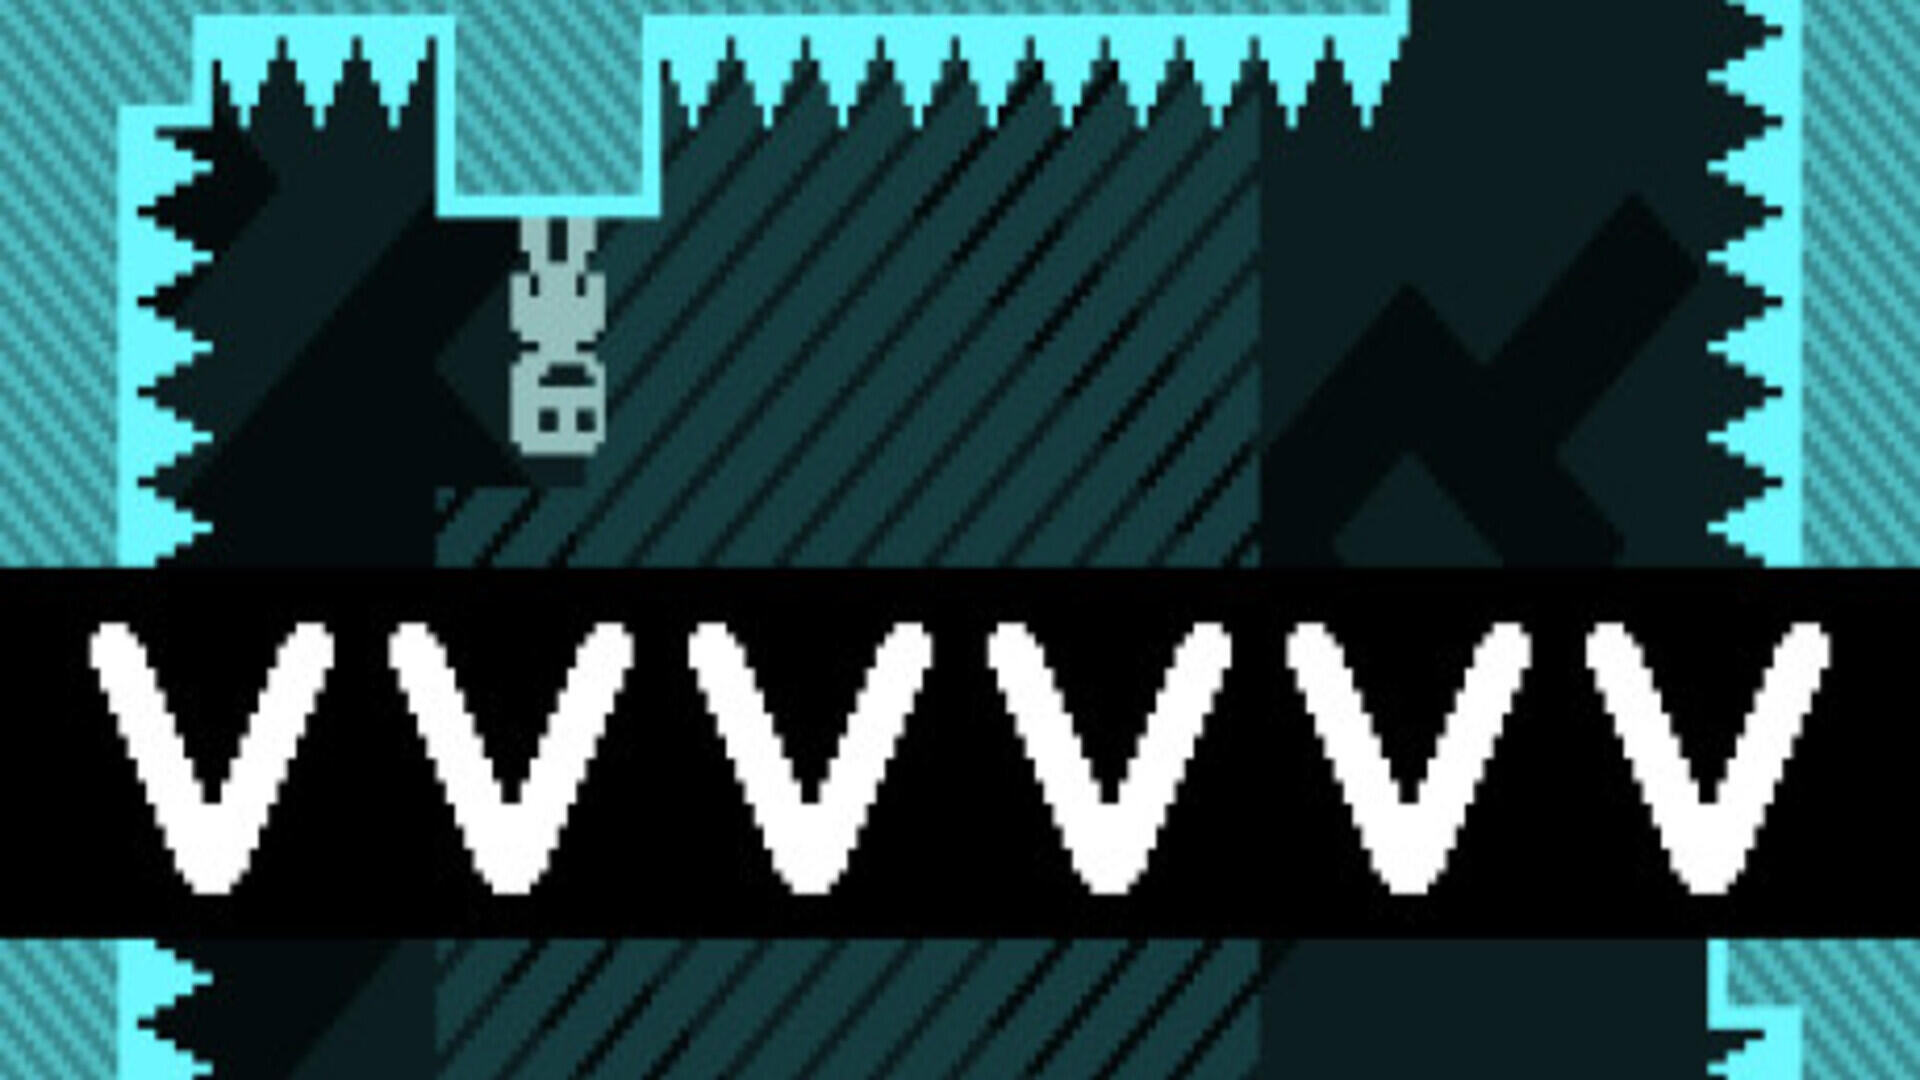 VVVVVV (v2.3.6)